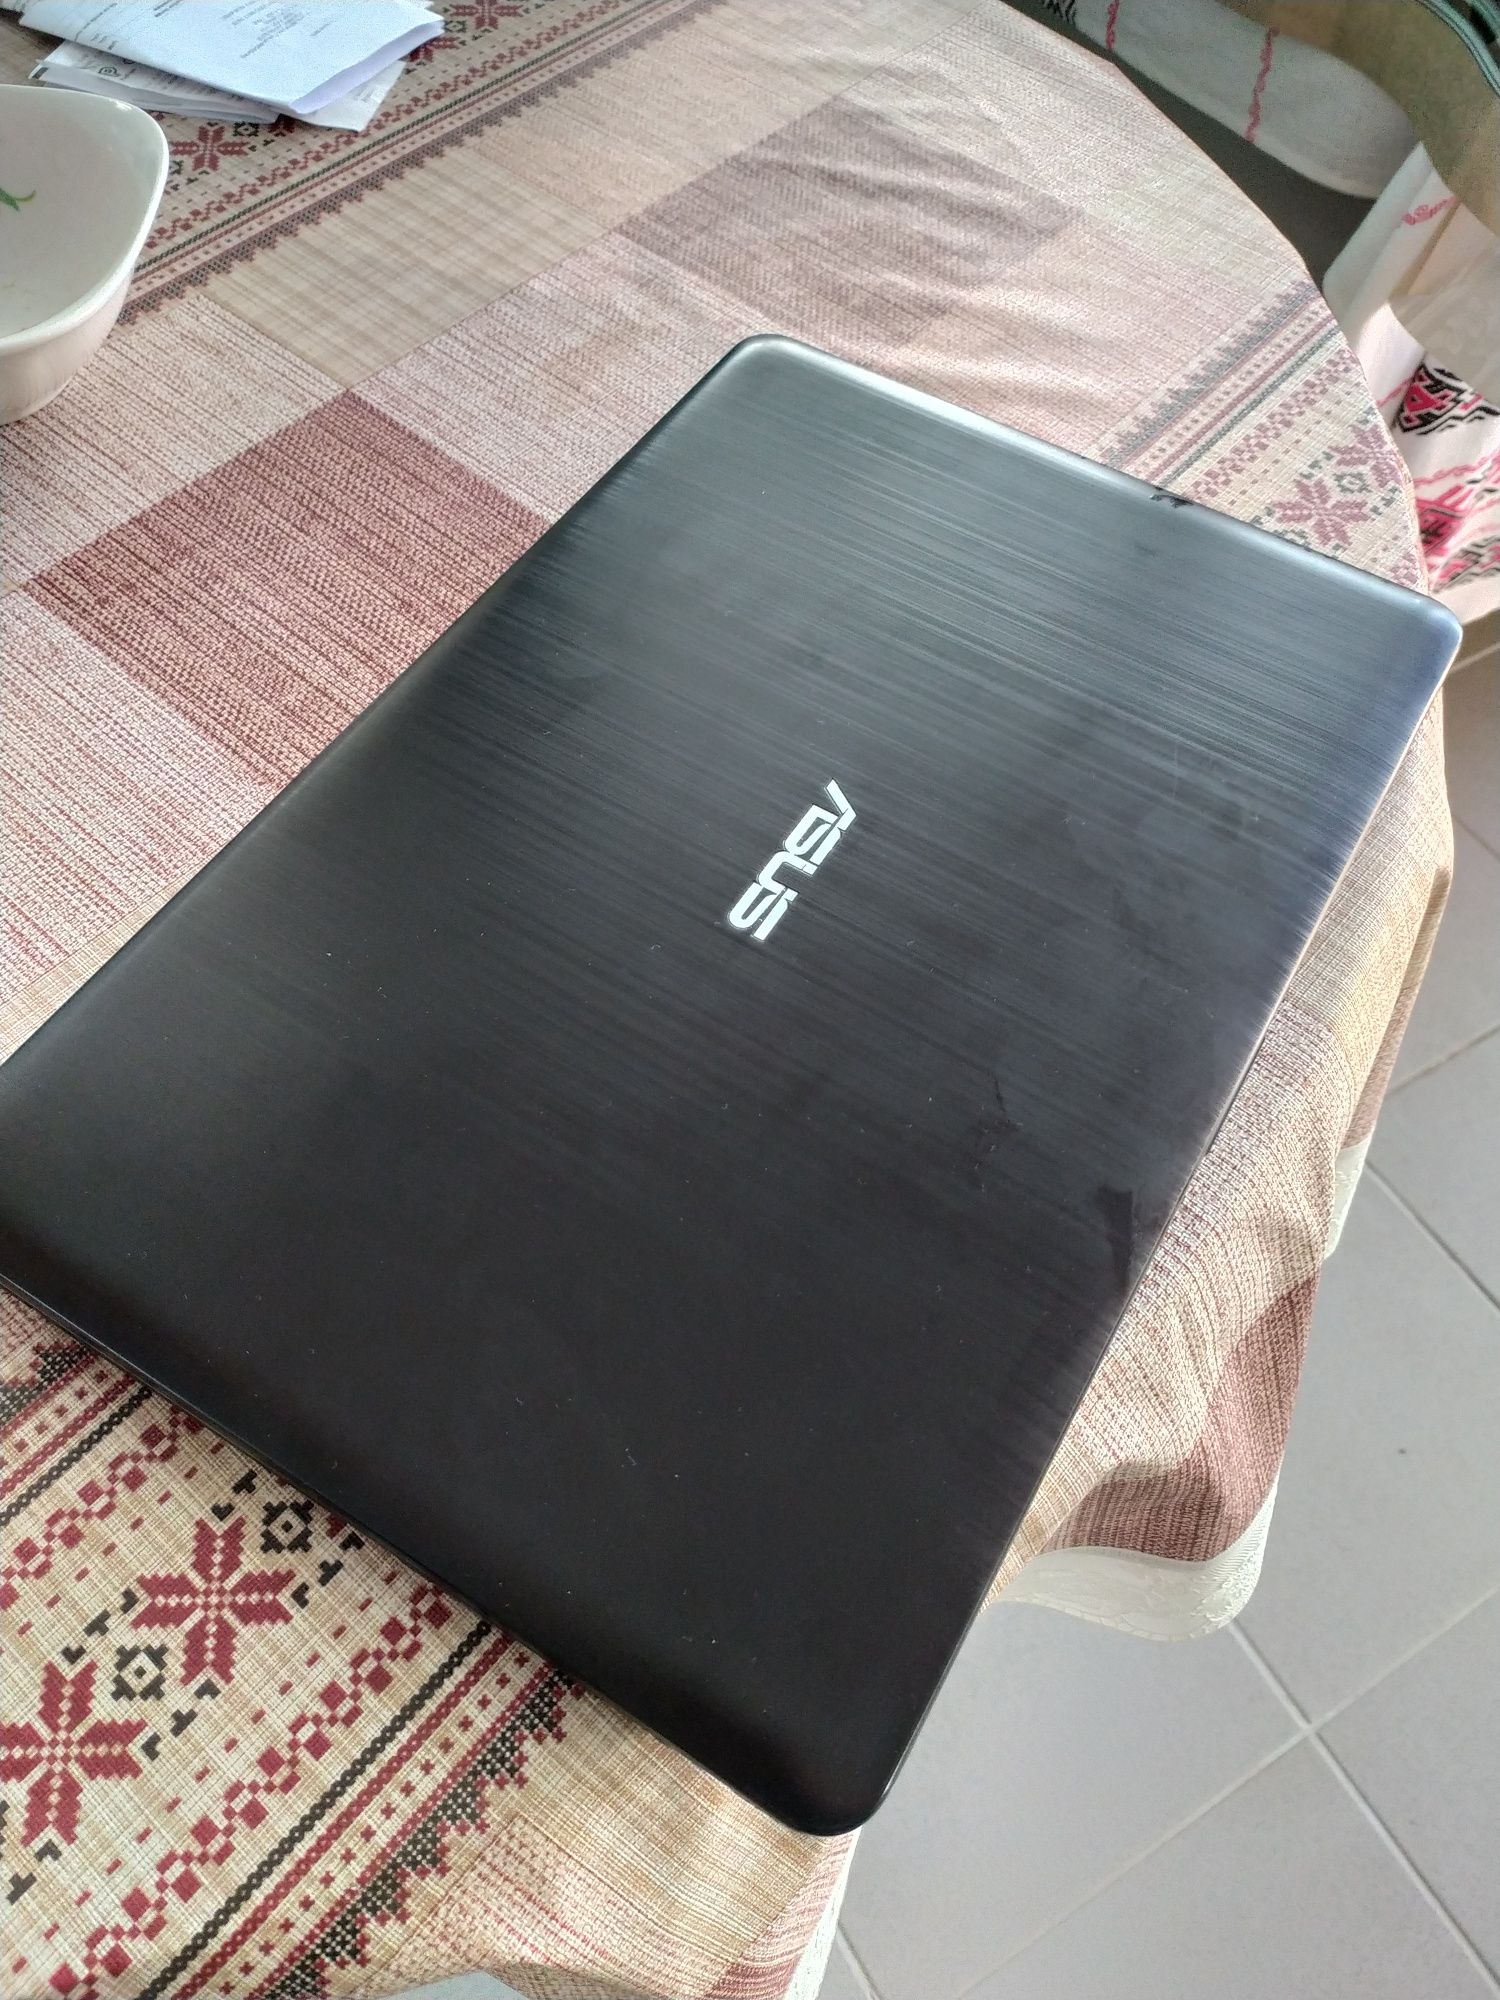 Laptop Asus x541 cu SSD